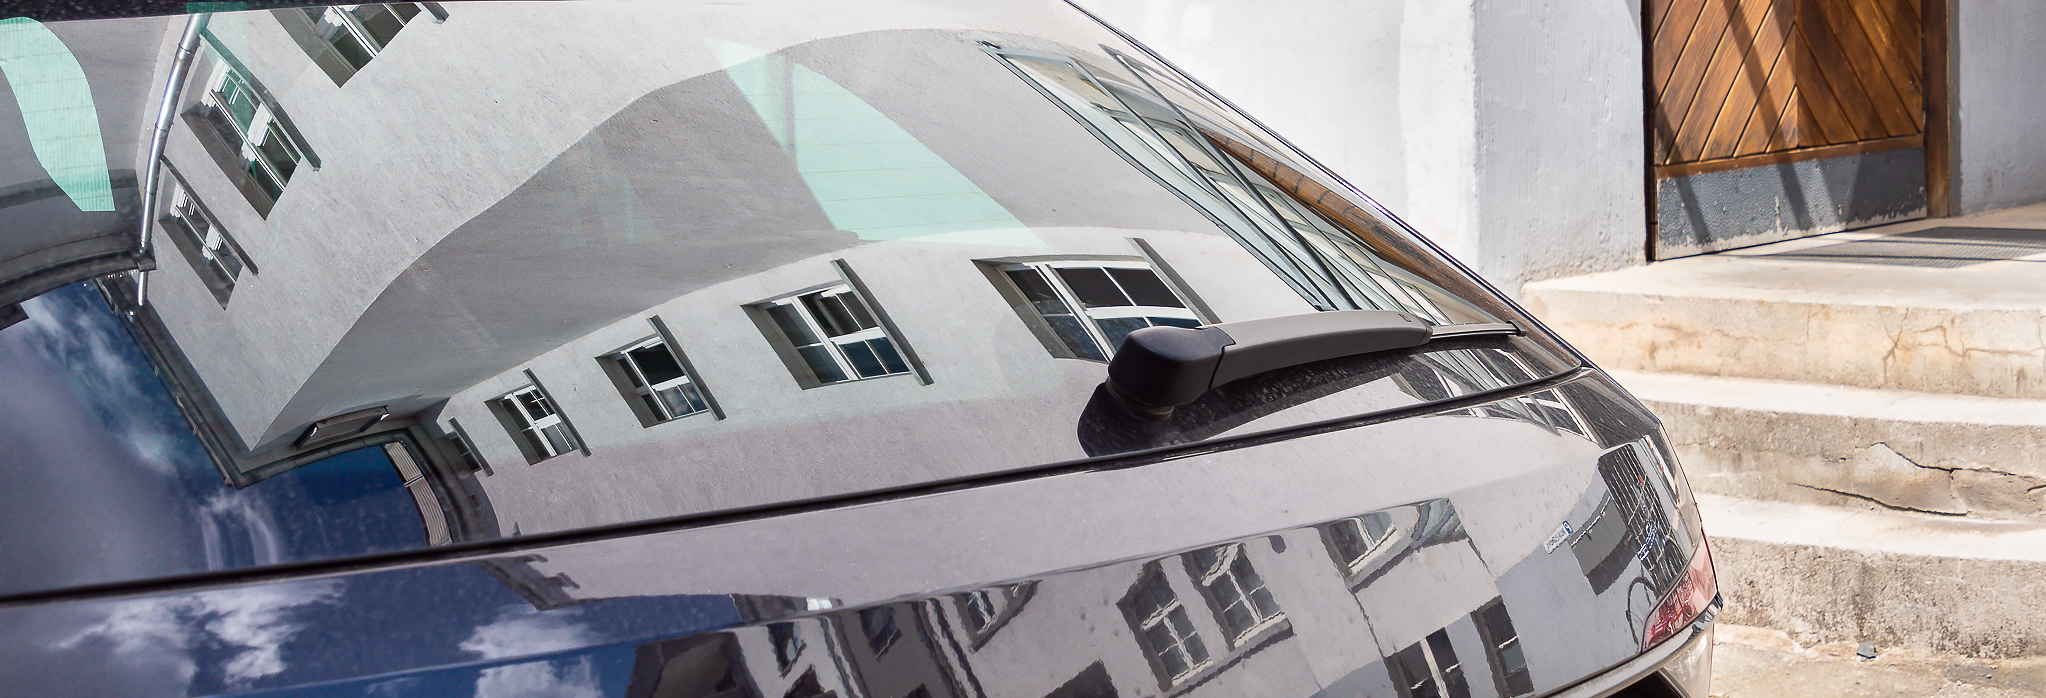 In den Scheiben des dpp-Firmenwagens spiegelt sich das Büro-Gebäude wider